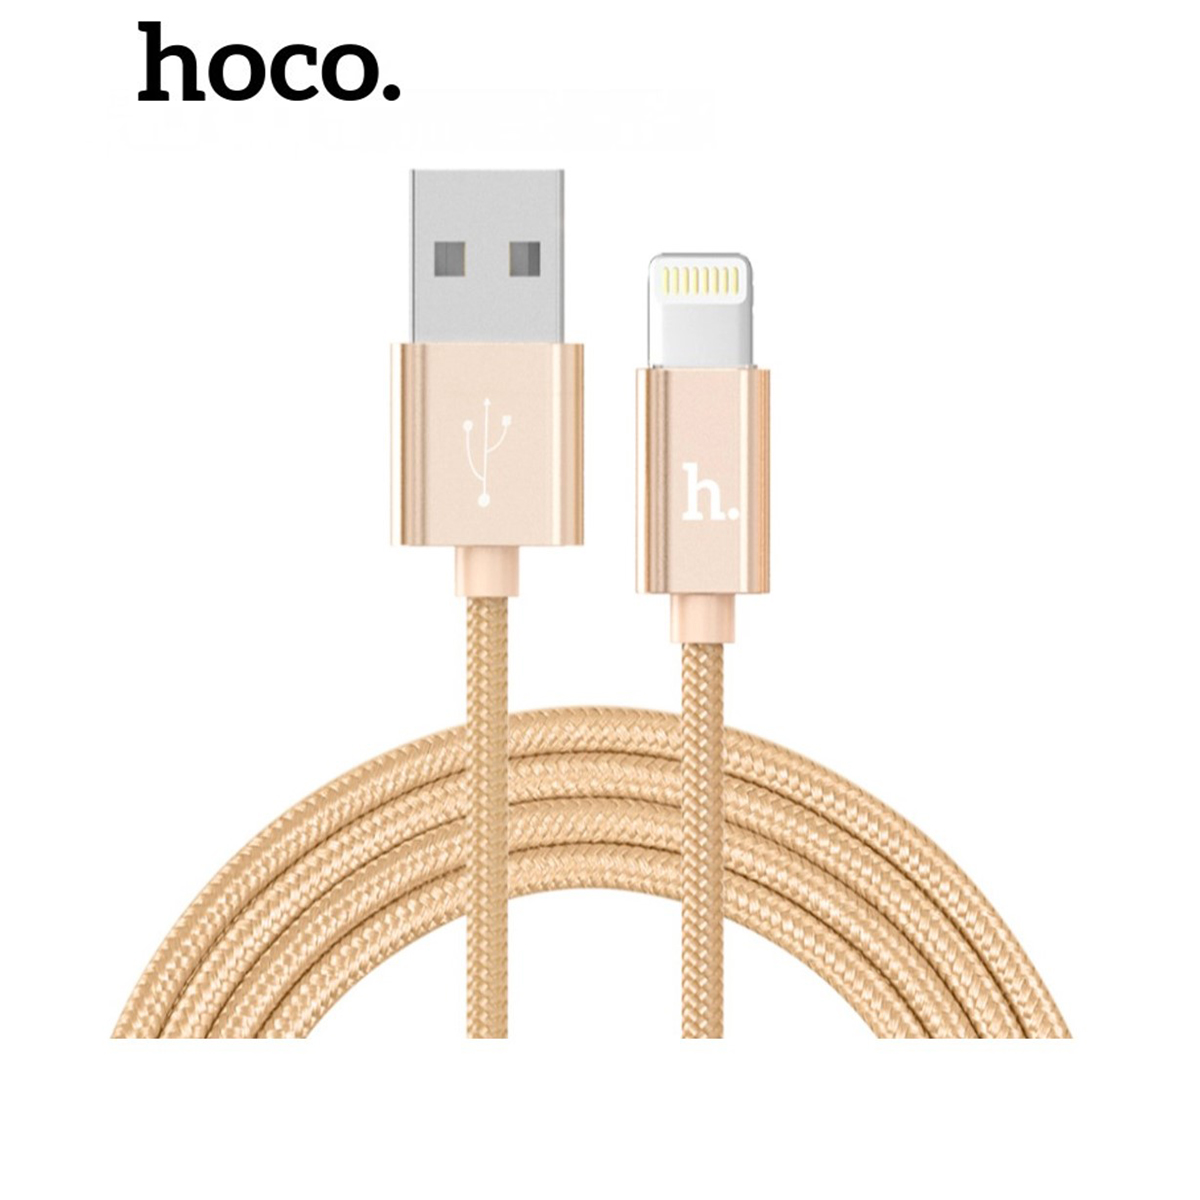 Cáp sạc nhanh Hoco X2 dây dù 2.4A full iPhone, Android, iPad dây dài 1m - Chính hãng